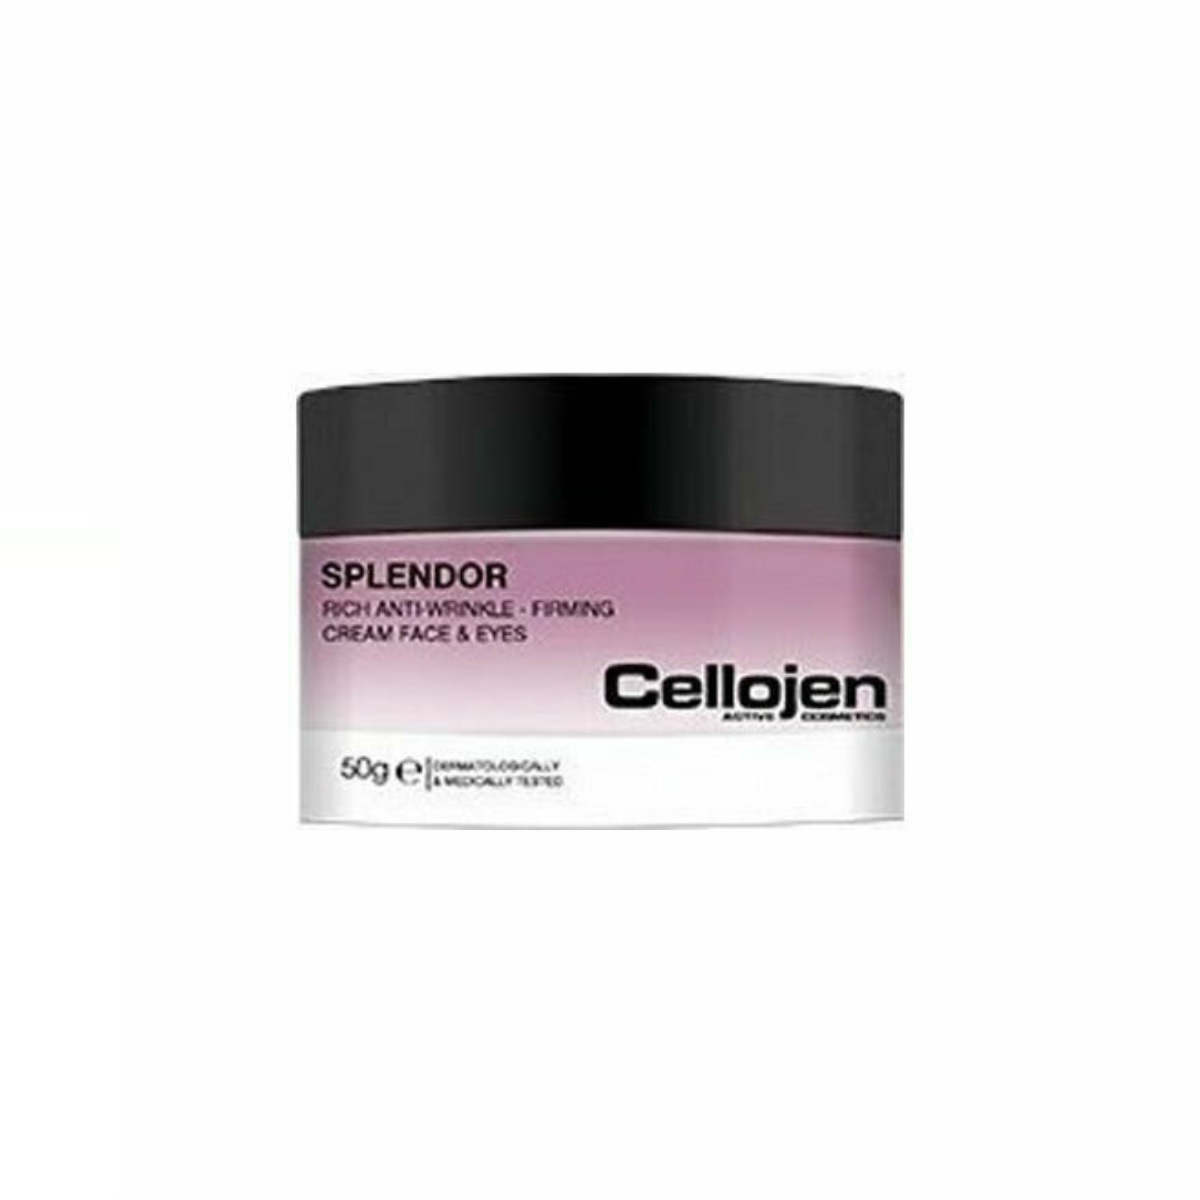 Cellojen Splendor Rich Anti-Wrinkle-Firming Face and Eyes Cream Αντιγηραντική Κρέμα Προσώπου και Ματιών 50g